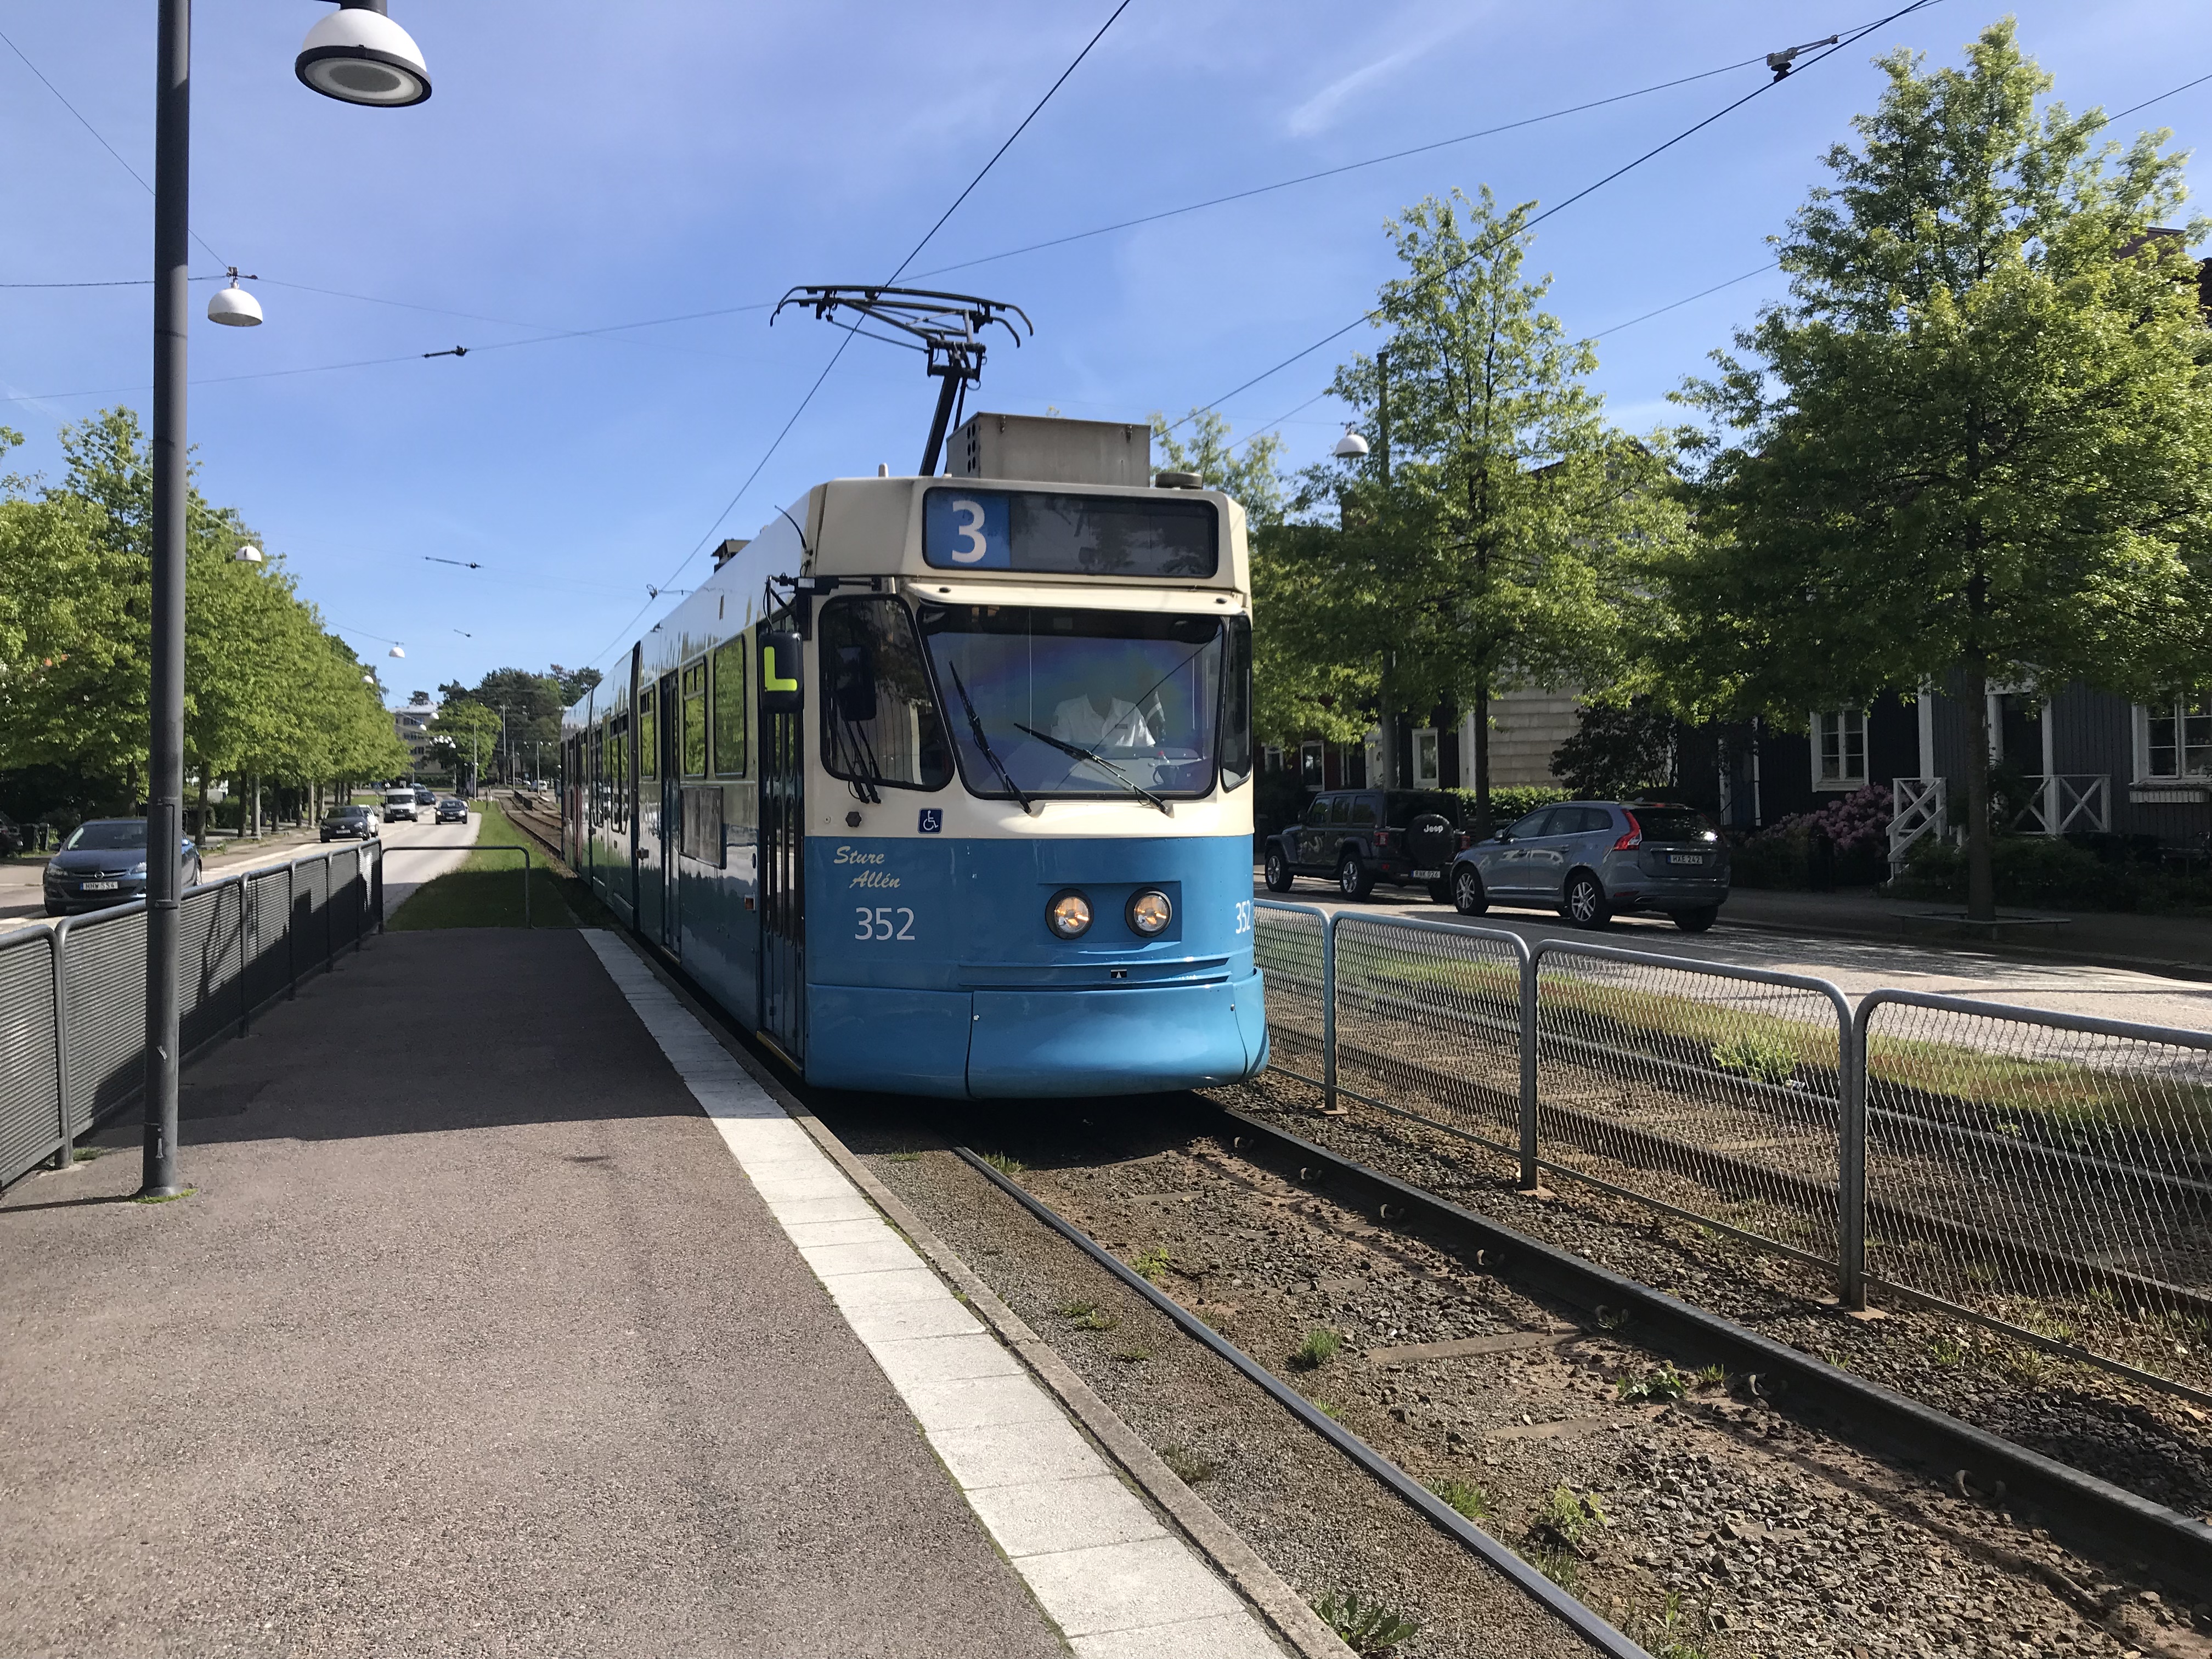 Göteborgs spårvägar is part of the public transport system organised by Göteborgs spårvägar. Gothenburg, Sweden